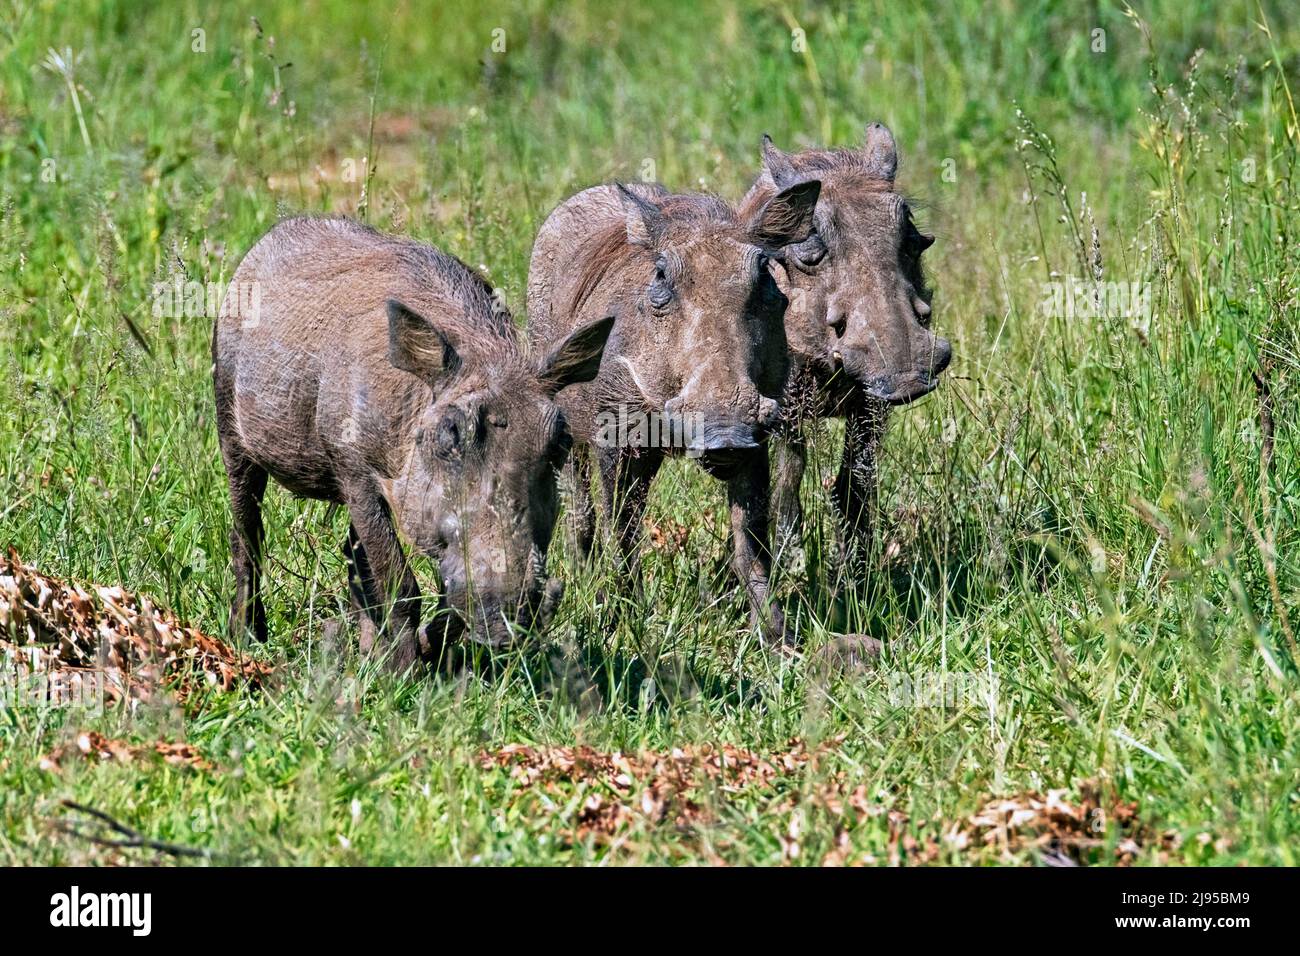 Three common warthogs (Phacochoerus africanus) on the savanna, Hluhluwe–Imfolozi Park / Game Reserve, KwaZulu-Natal, South Africa Stock Photo